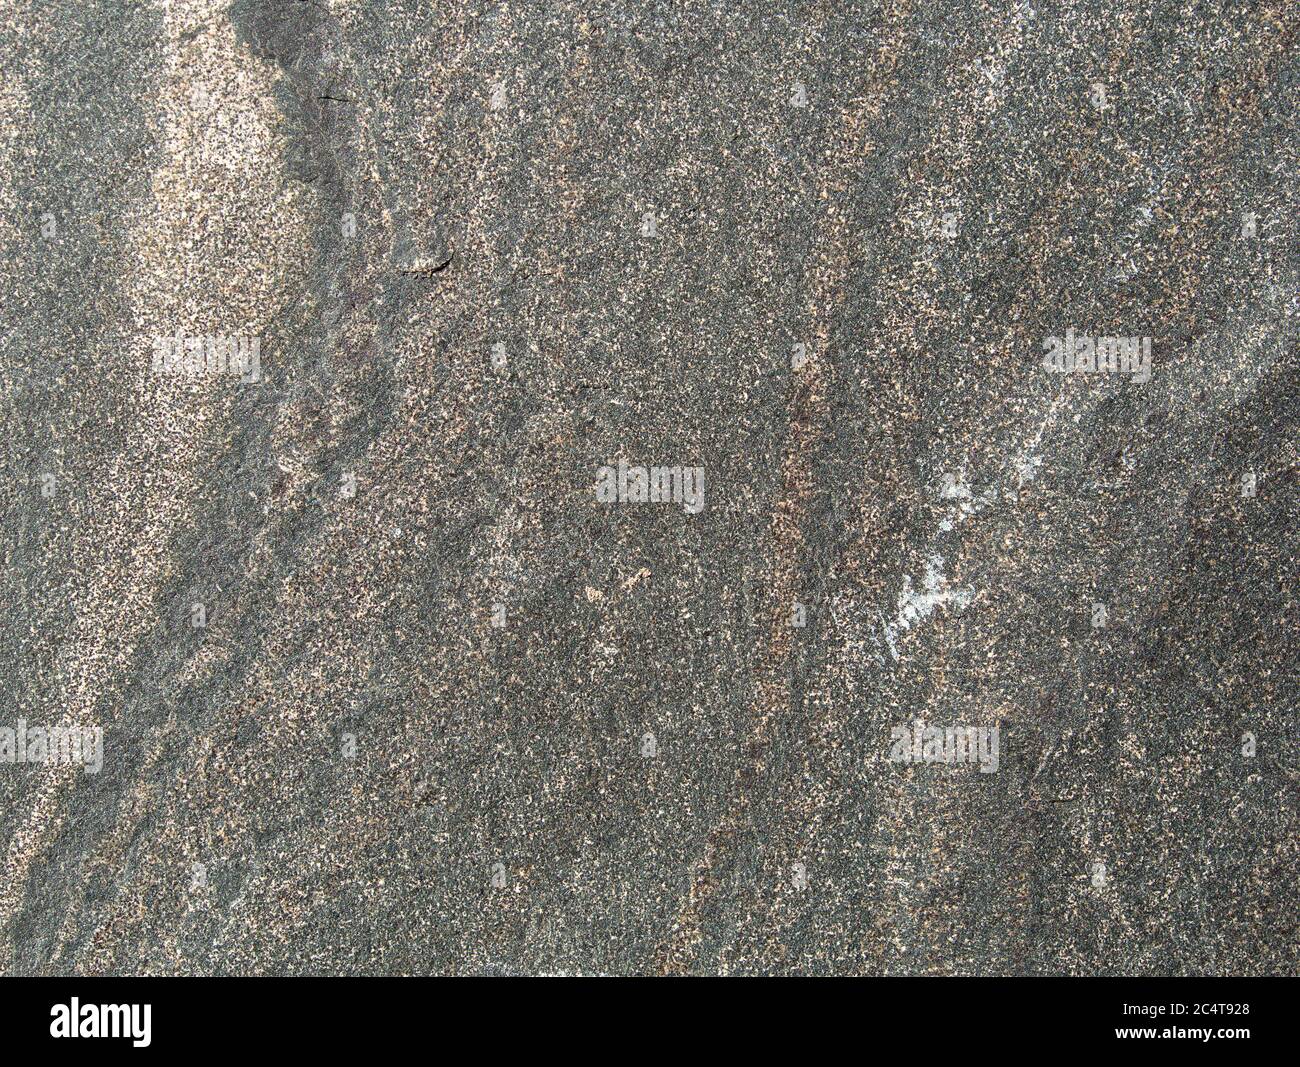 Varie lastre di pietra di granito, basalto o arenaria, da grigio a colorato, come sfondo, primo piano Foto Stock